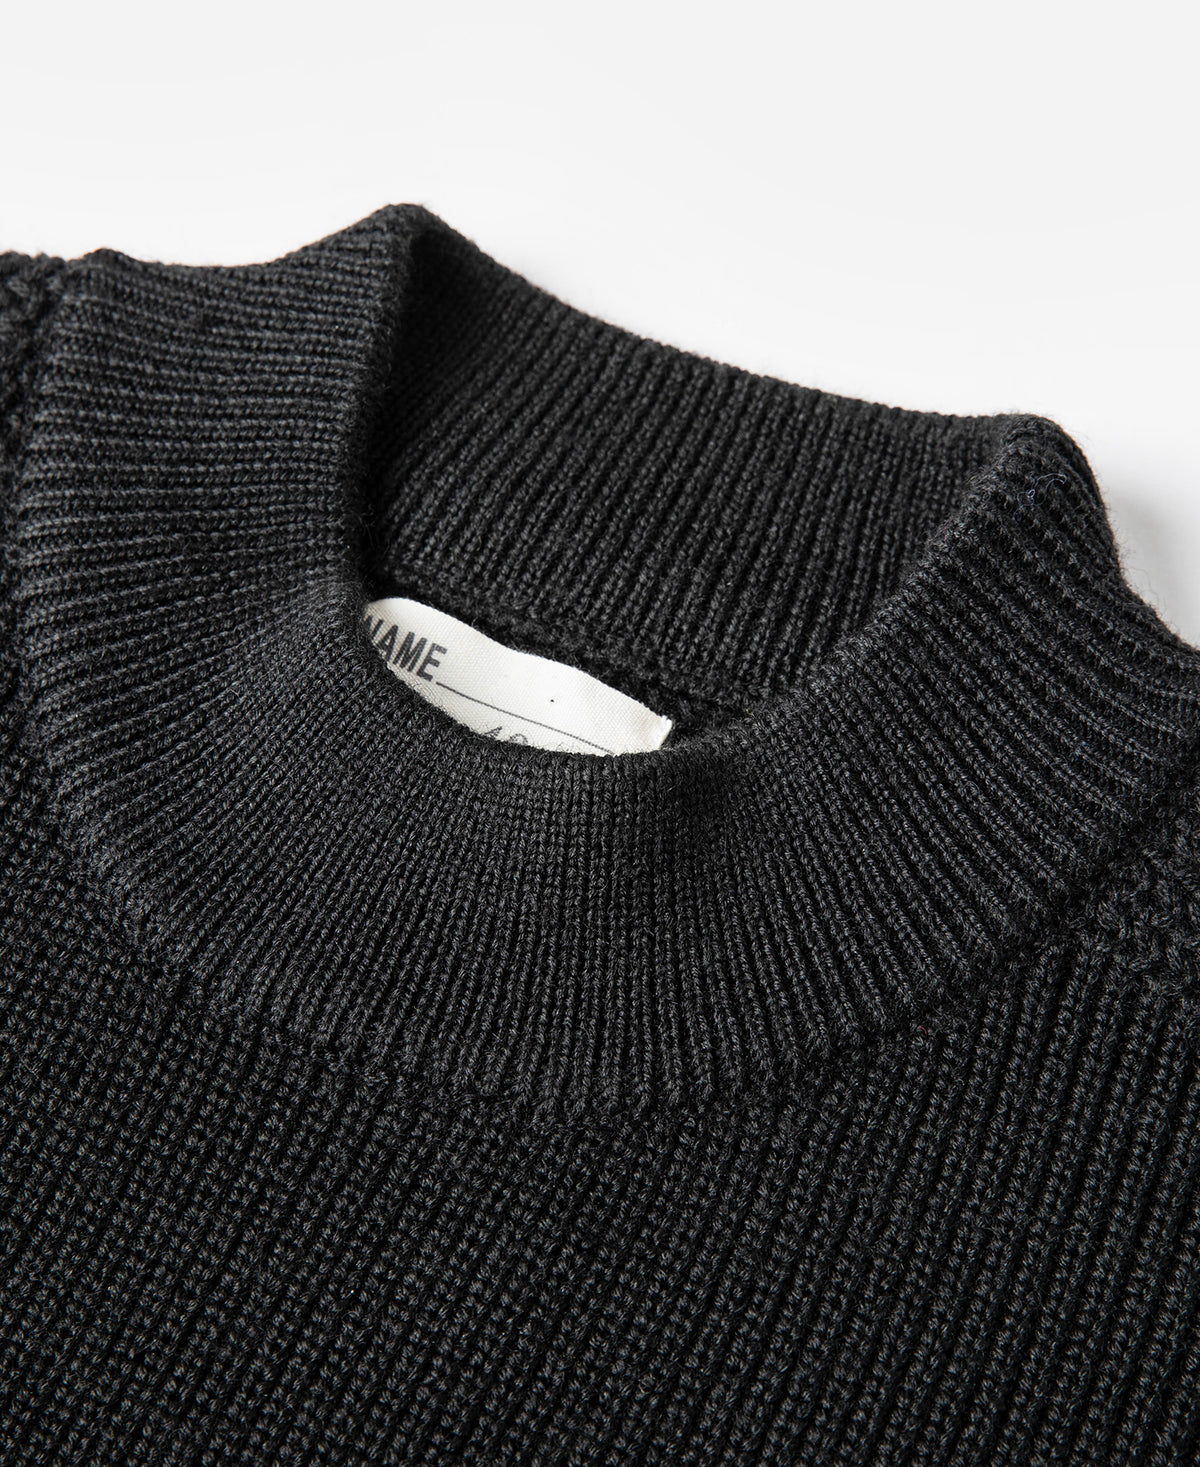 Pre-War Model USN Woolen Sweater - Black